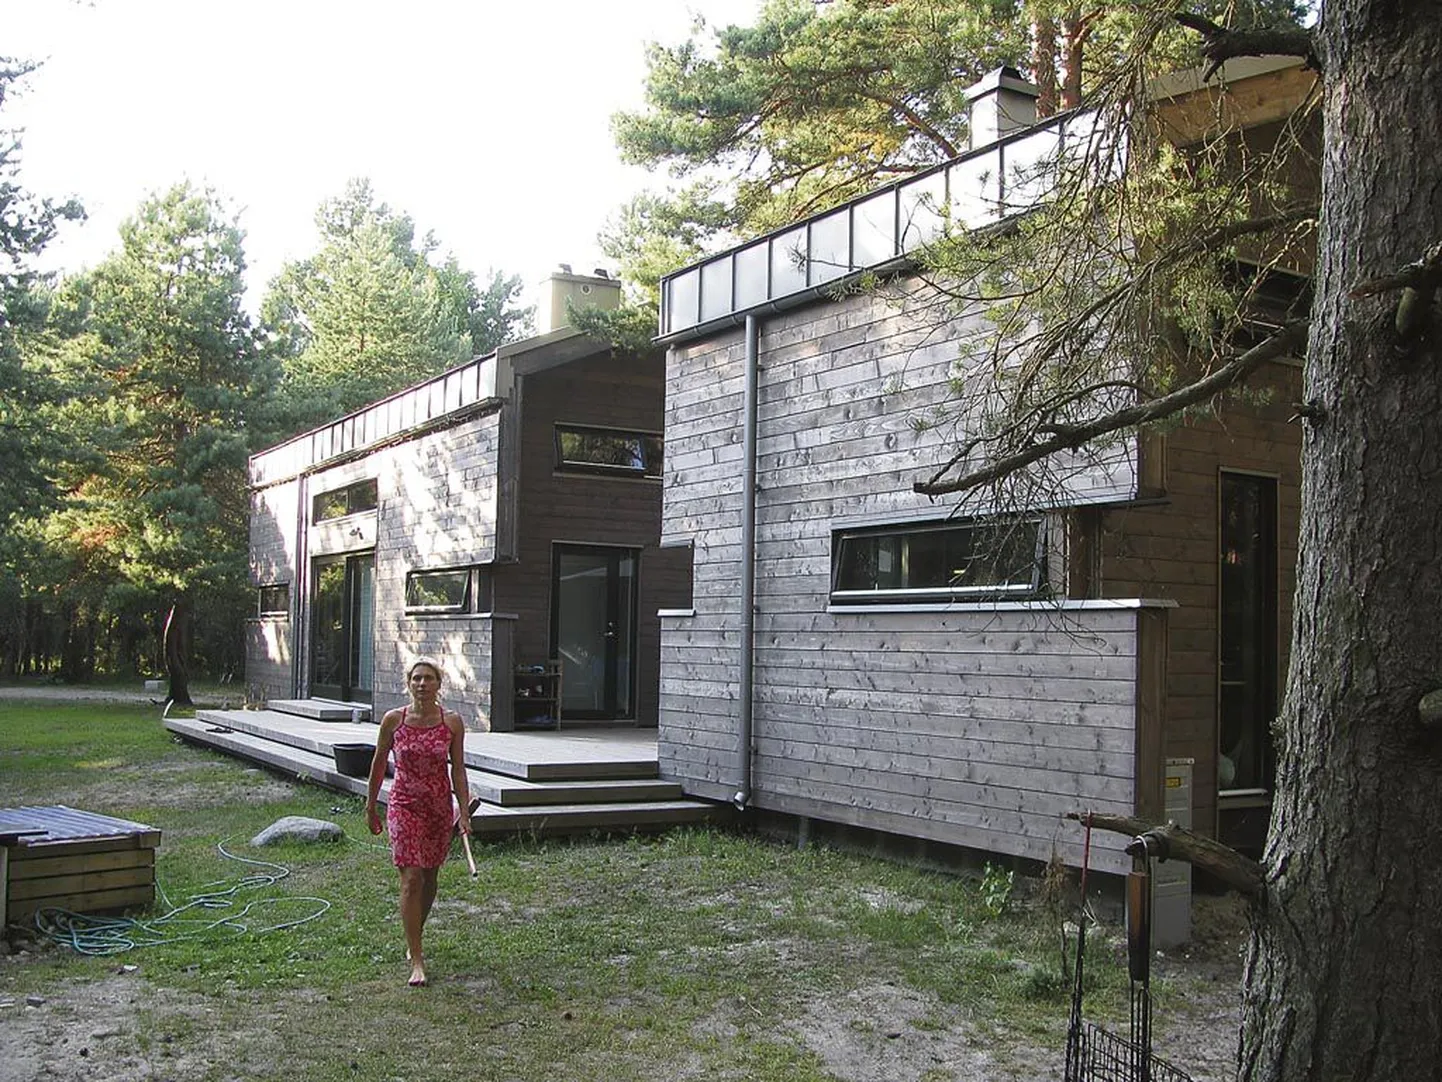 Moodne räästasteta viilkatusega poolteisekorruseline puitmajakomplekt (arhitekt Mart Kadarik) on ehitatud nii, et ühes majas elab Epp oma perega ja teine on turistidele.